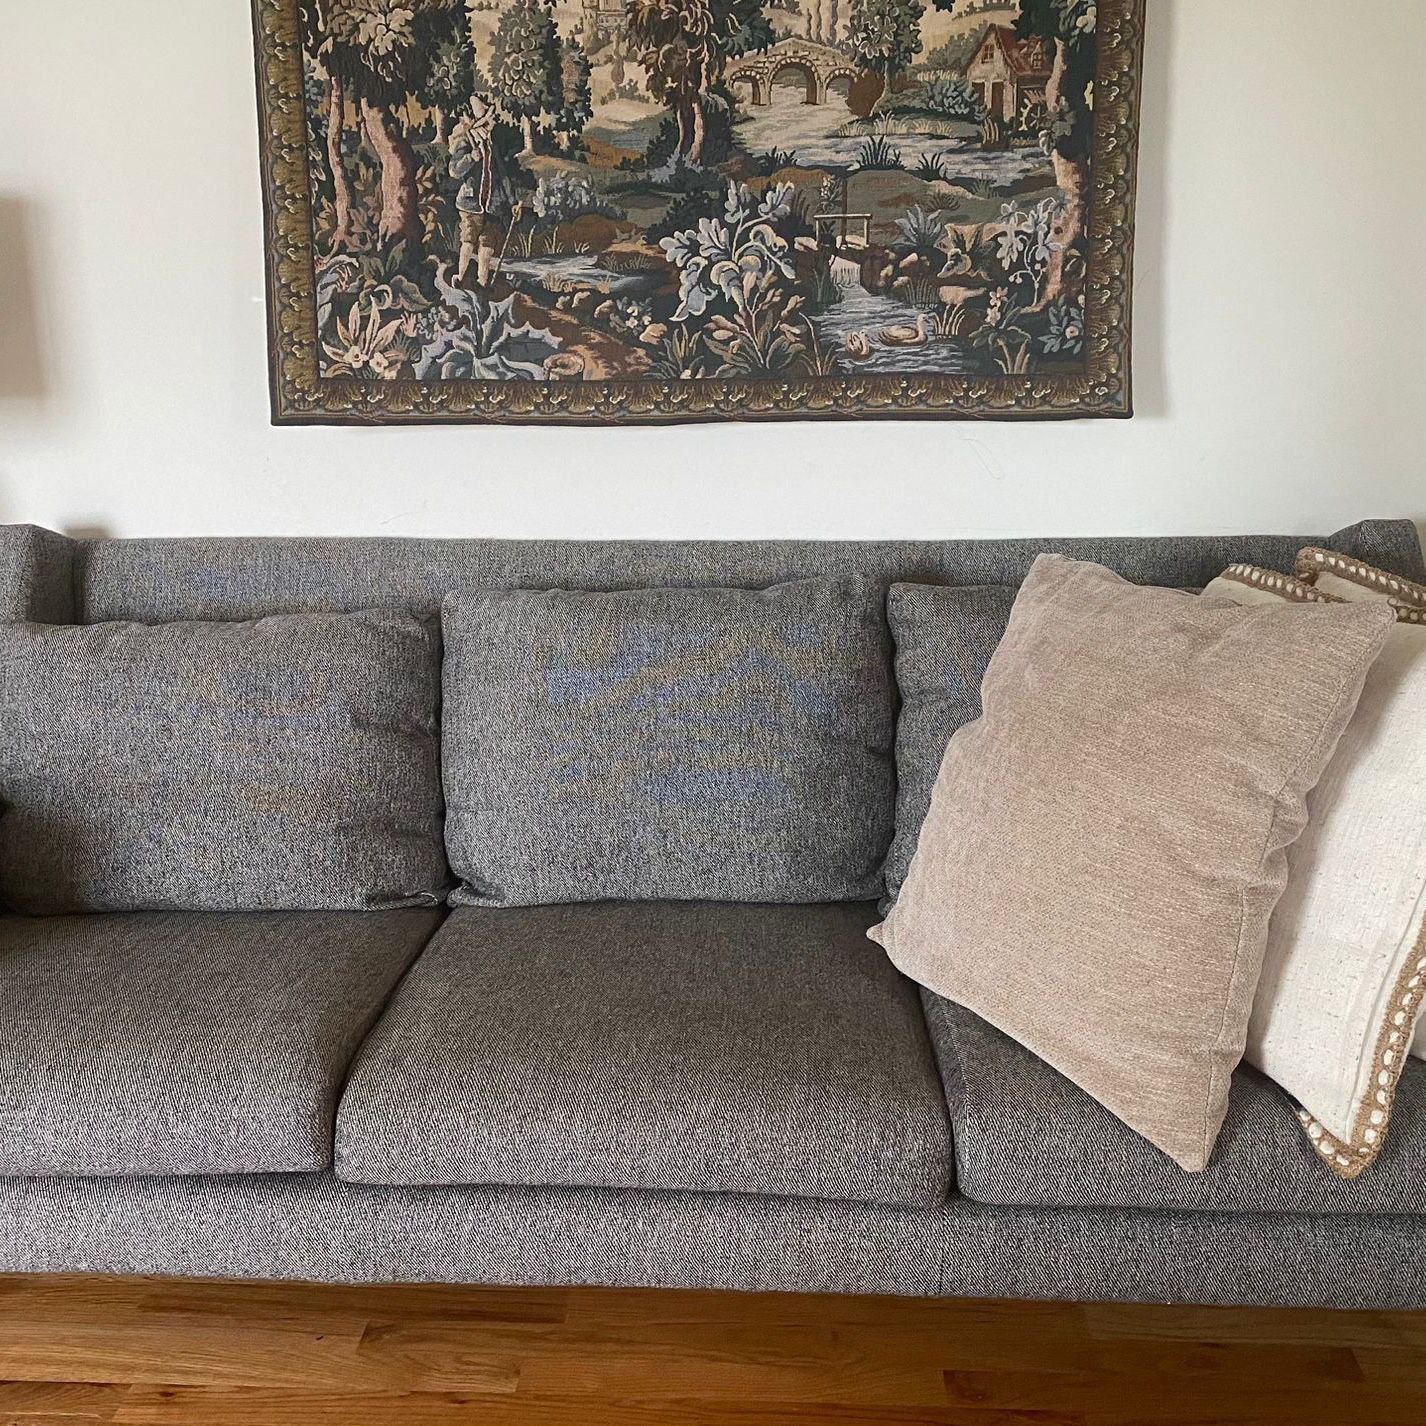 West Elm Carlo Mid-Century Sofa in Chic Grey - Major Discount!